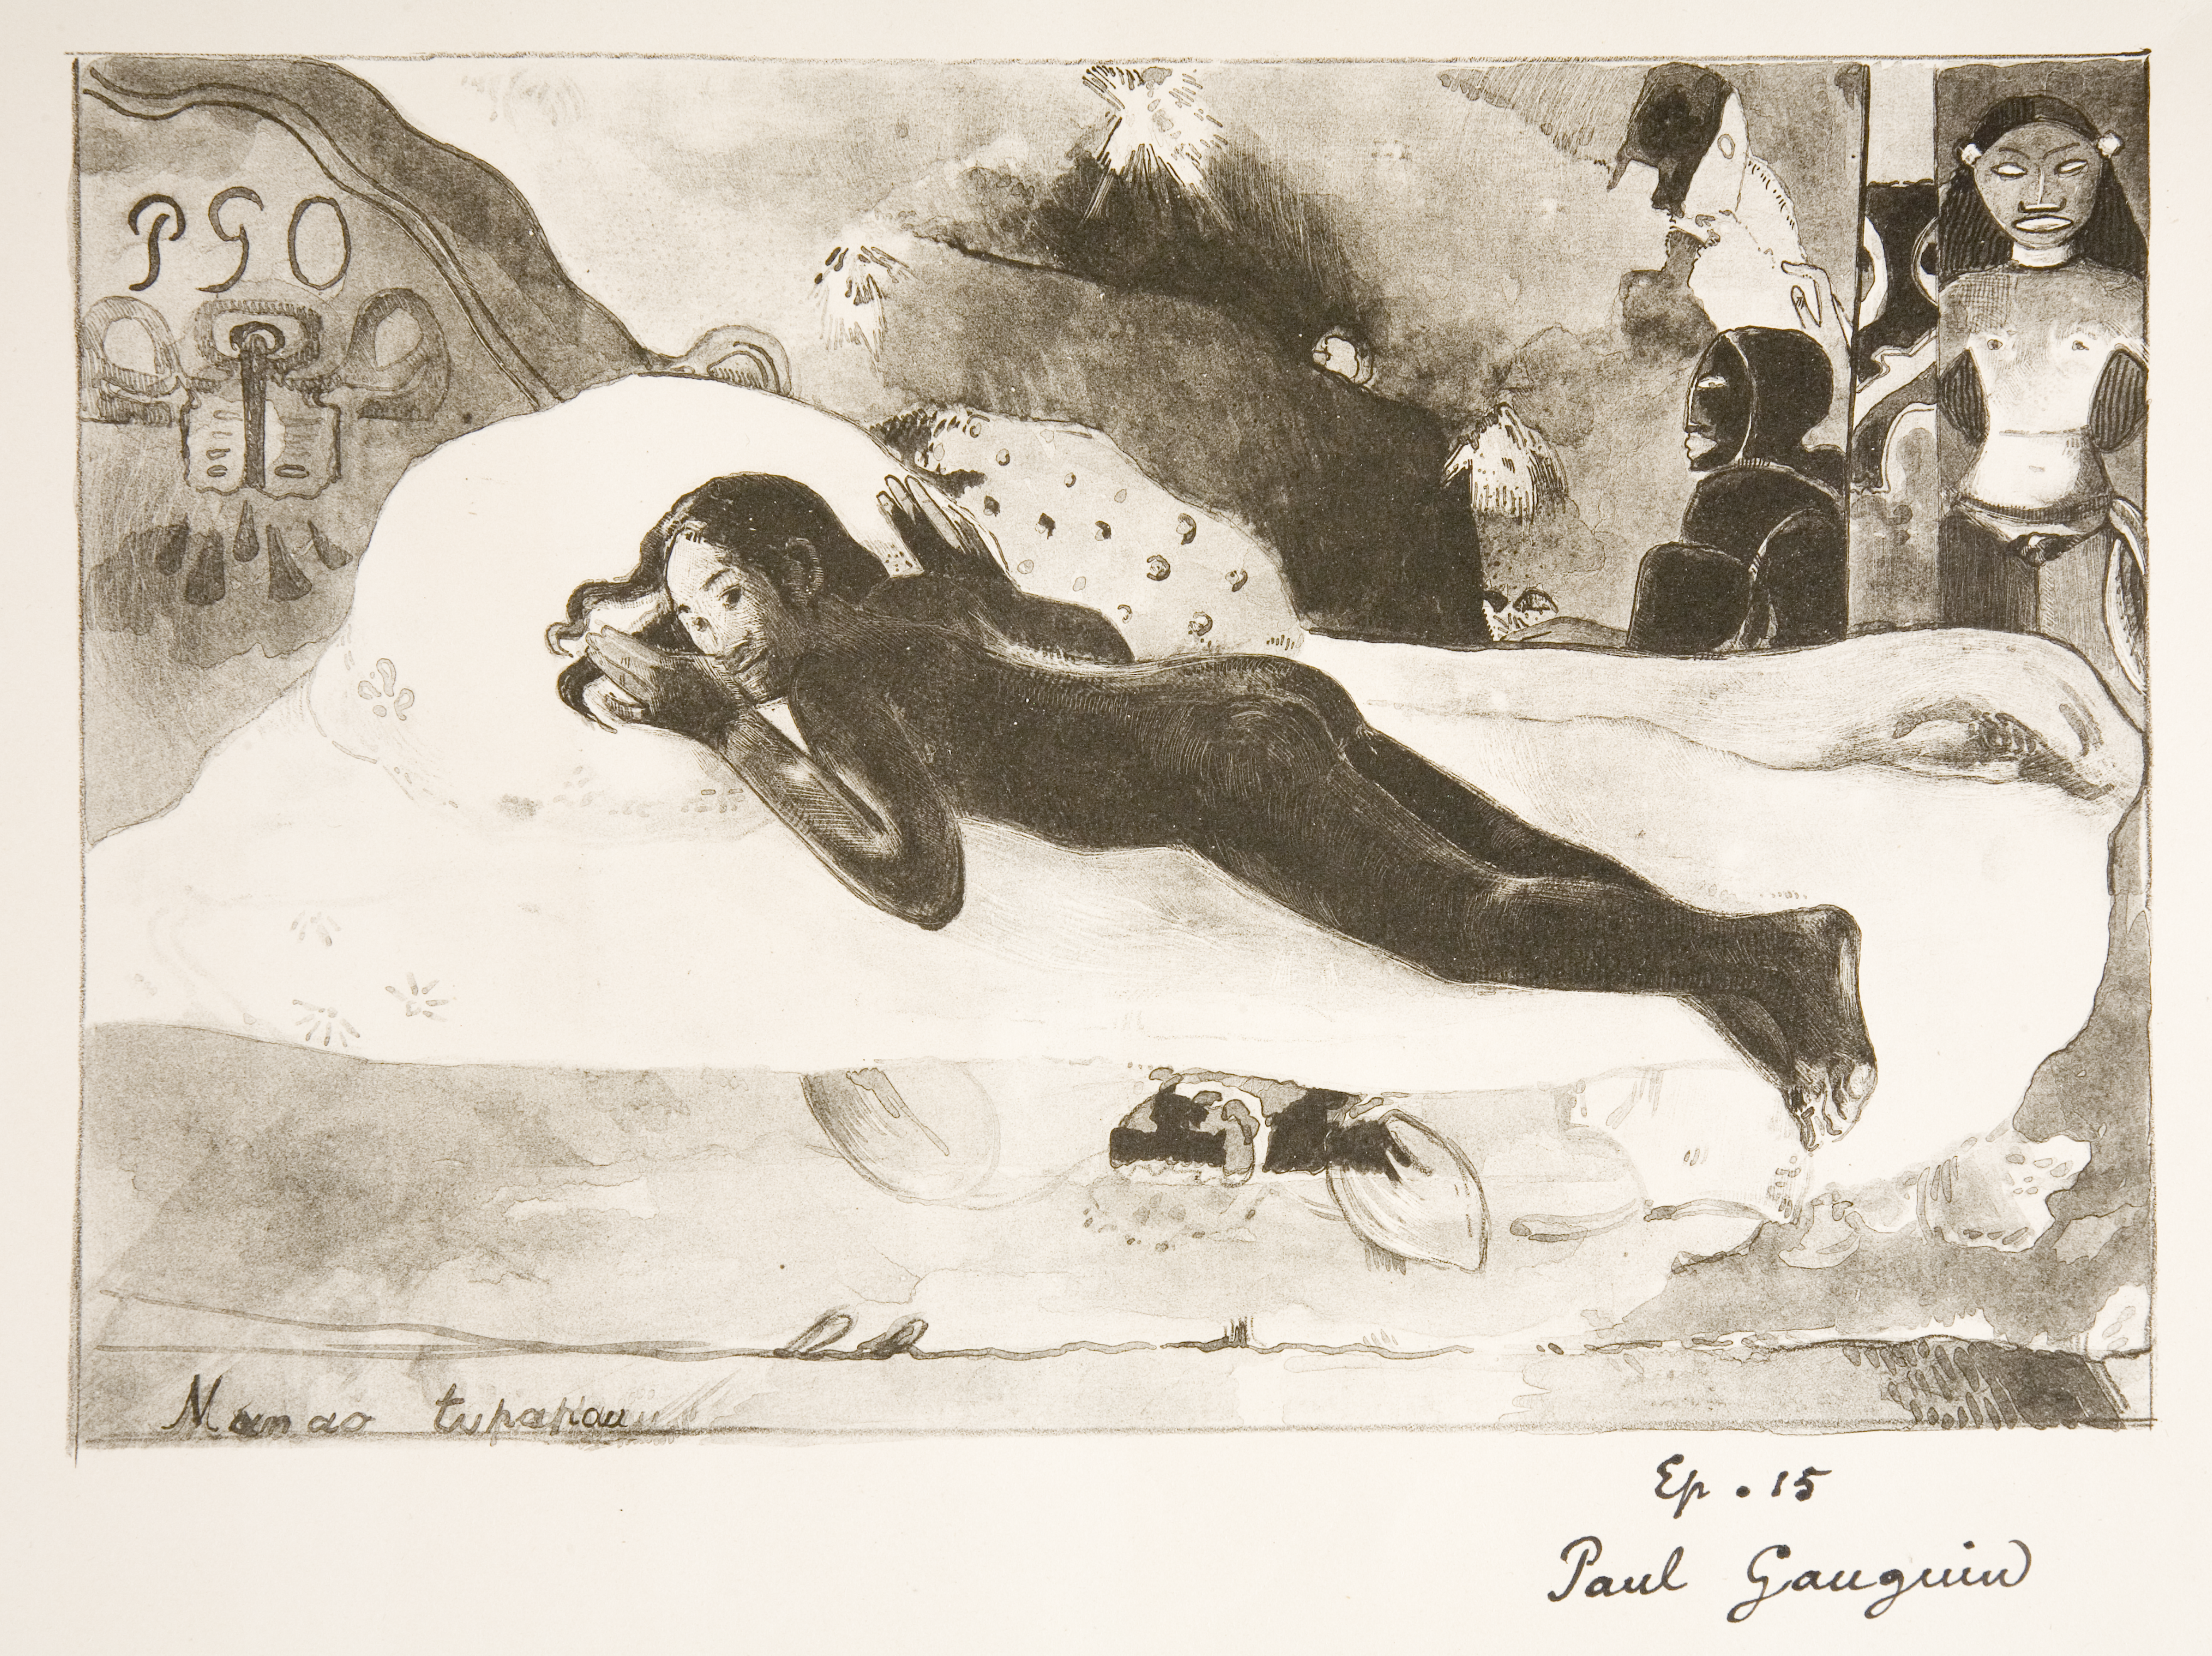 Manao Tupapau (Ona Myśli o Zjawach – Duch Zmarłych Patrzy) by Paul Gauguin - 1894 - - 